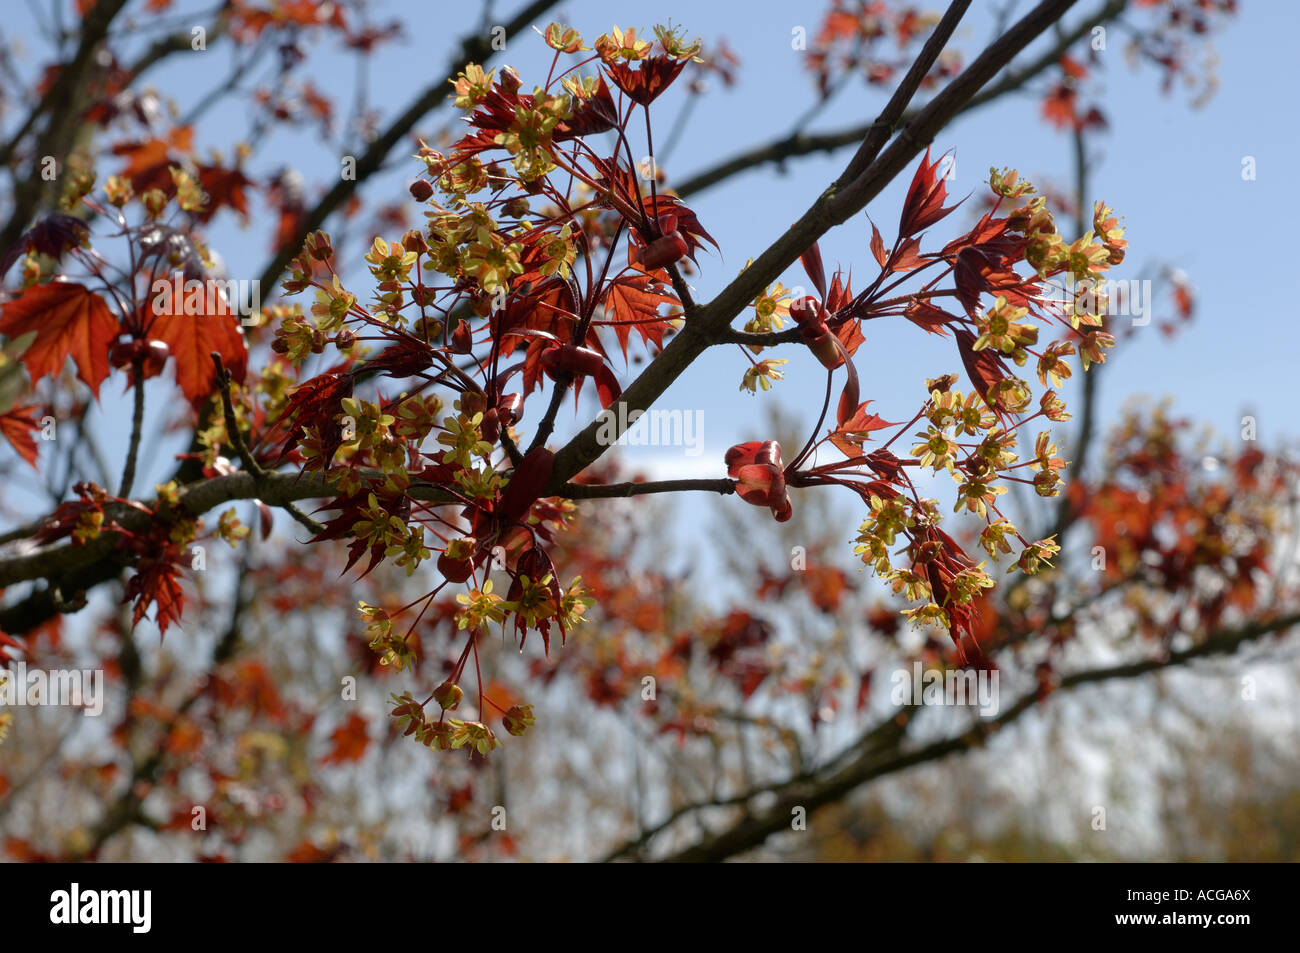 Acer platanoides Crimson King nouveau feuillage rouge foncé et des fleurs au printemps Banque D'Images